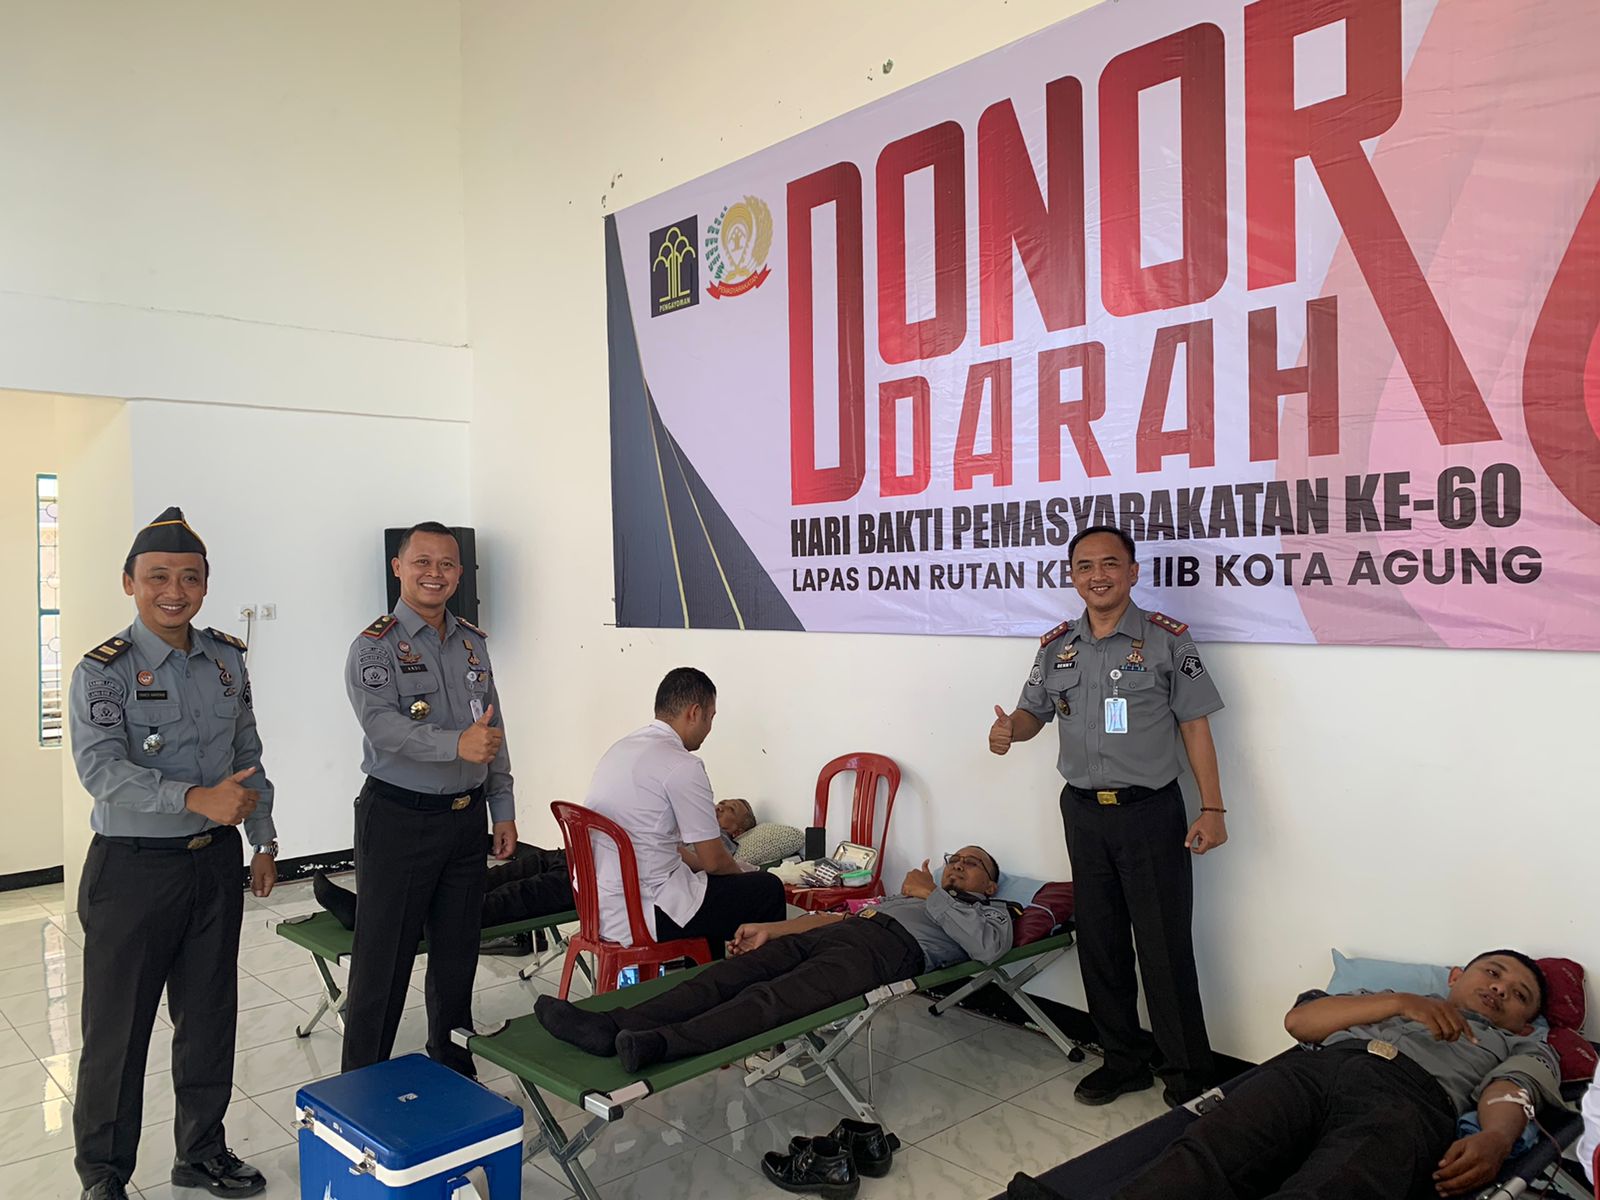 Rutan dan Lapas Kota Agung Gelar Aksi Donor Darah Dalam Menyambut HBP Ke - 60